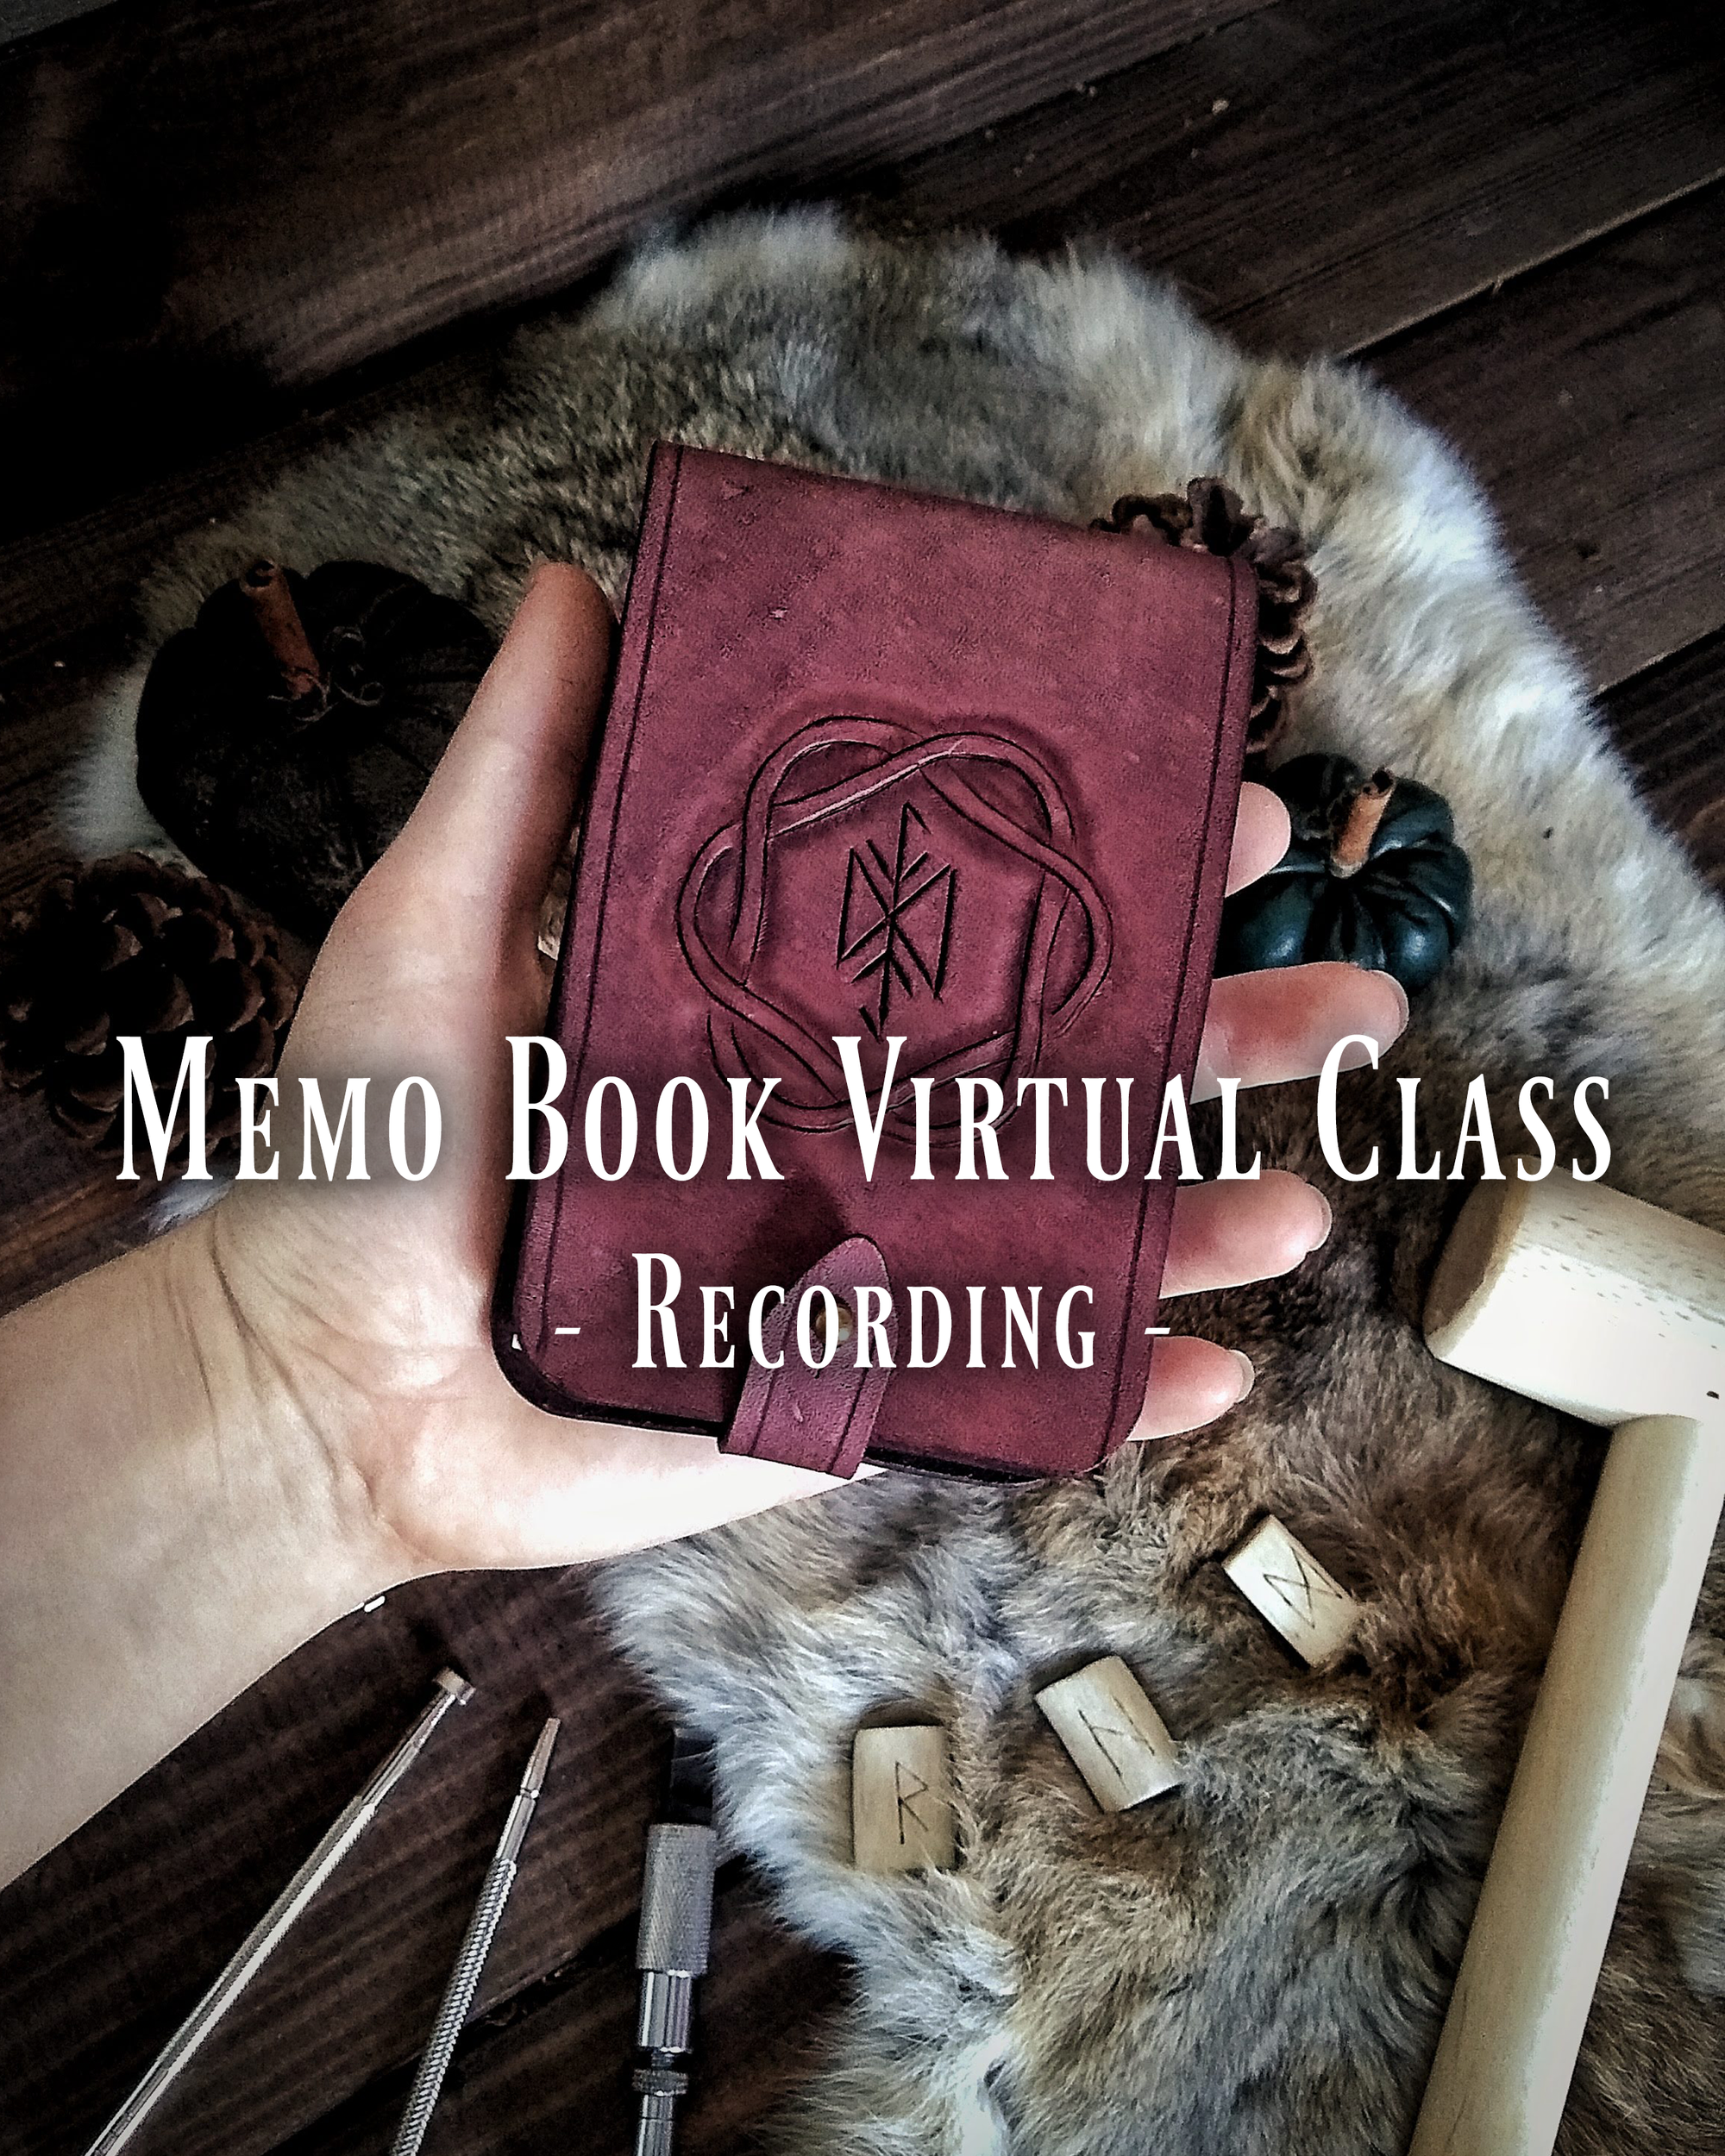 Memo Book Virtual Class Recording